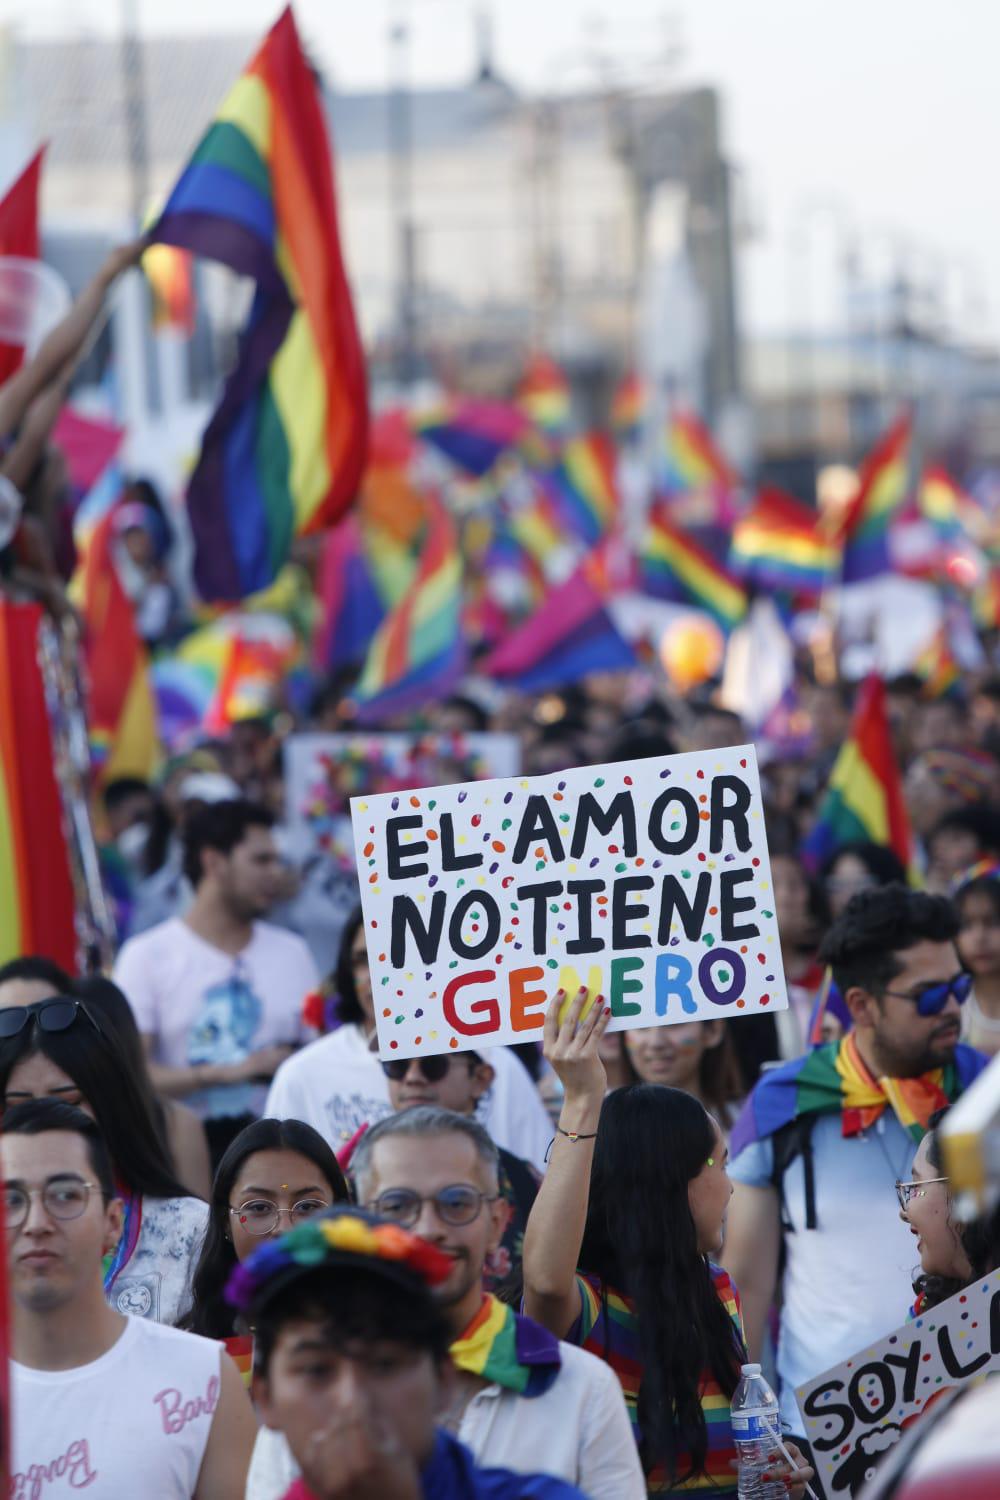 $!“El amor no tiene género” y muchas pancartas más se pueden leer entre la multitud.